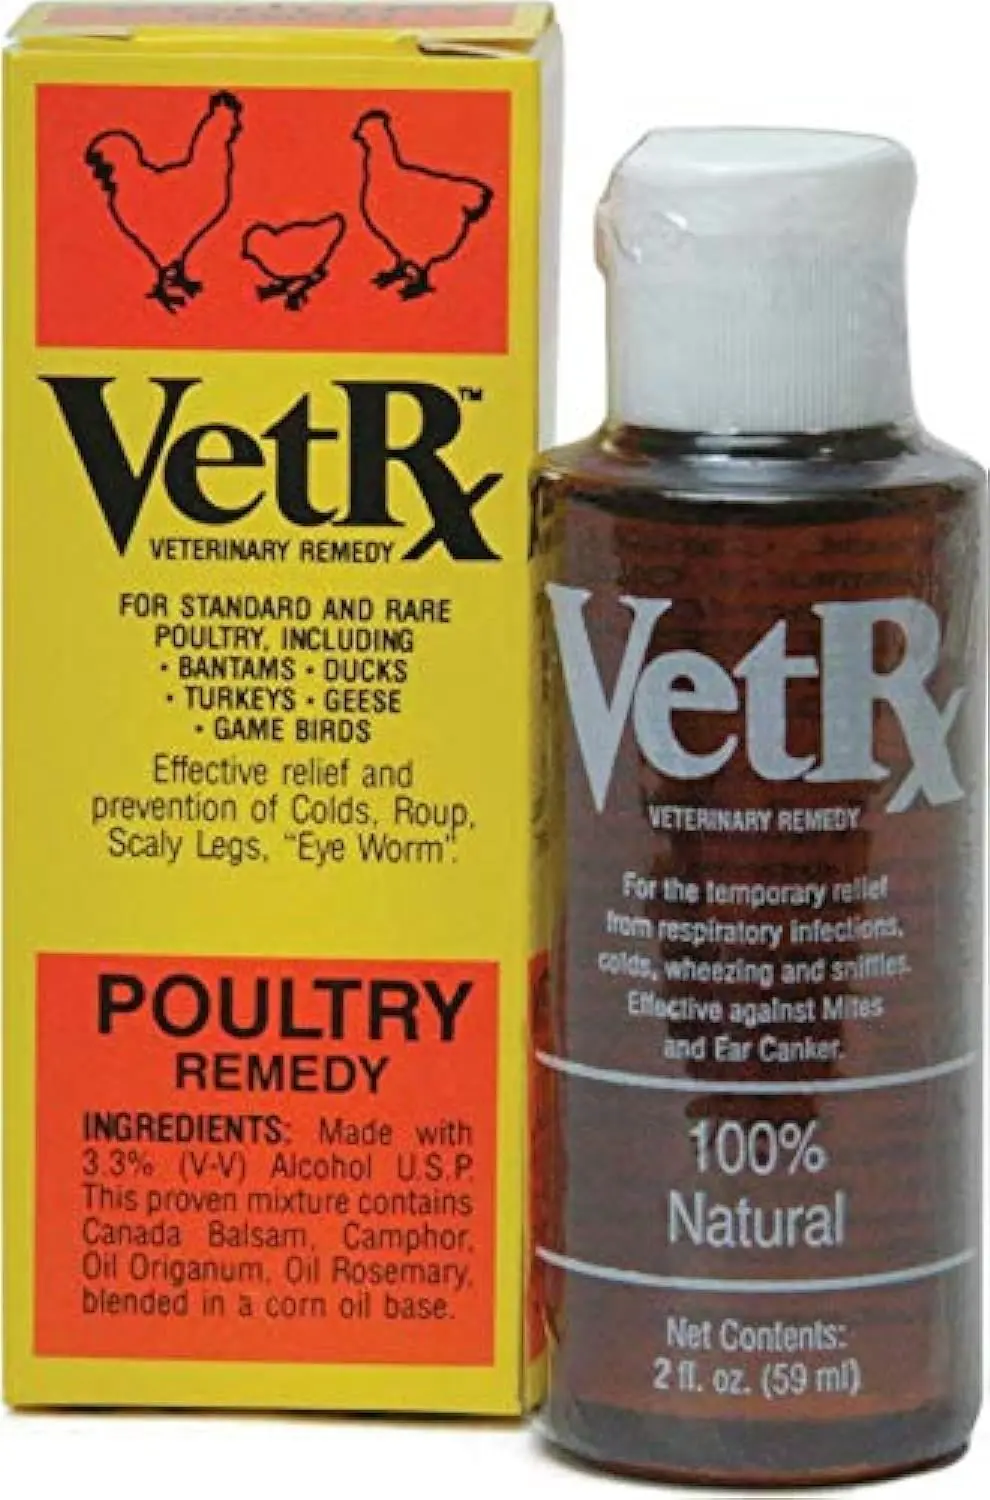 productos veterinarios para aves - Qué medicamentos utilizan los veterinarios